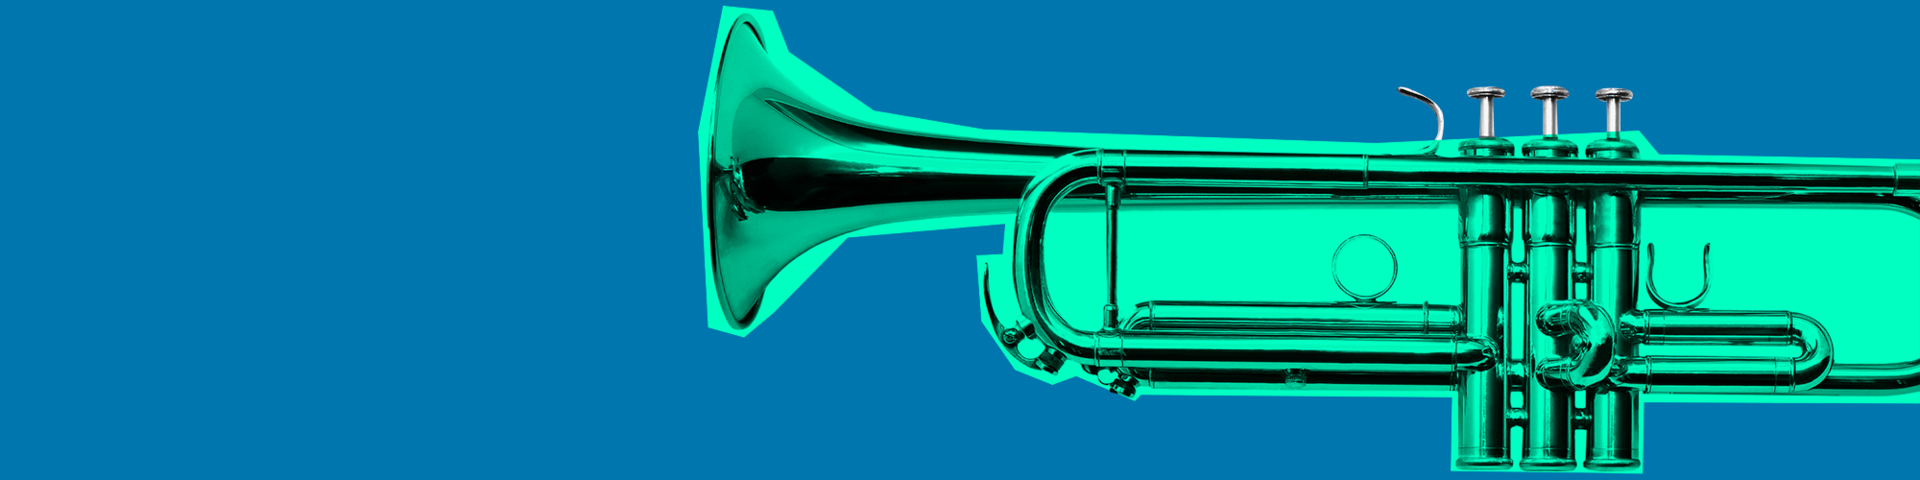 En grøn trompet på blå baggrund som en del af Midlertidig kunststøtteordning 2021.